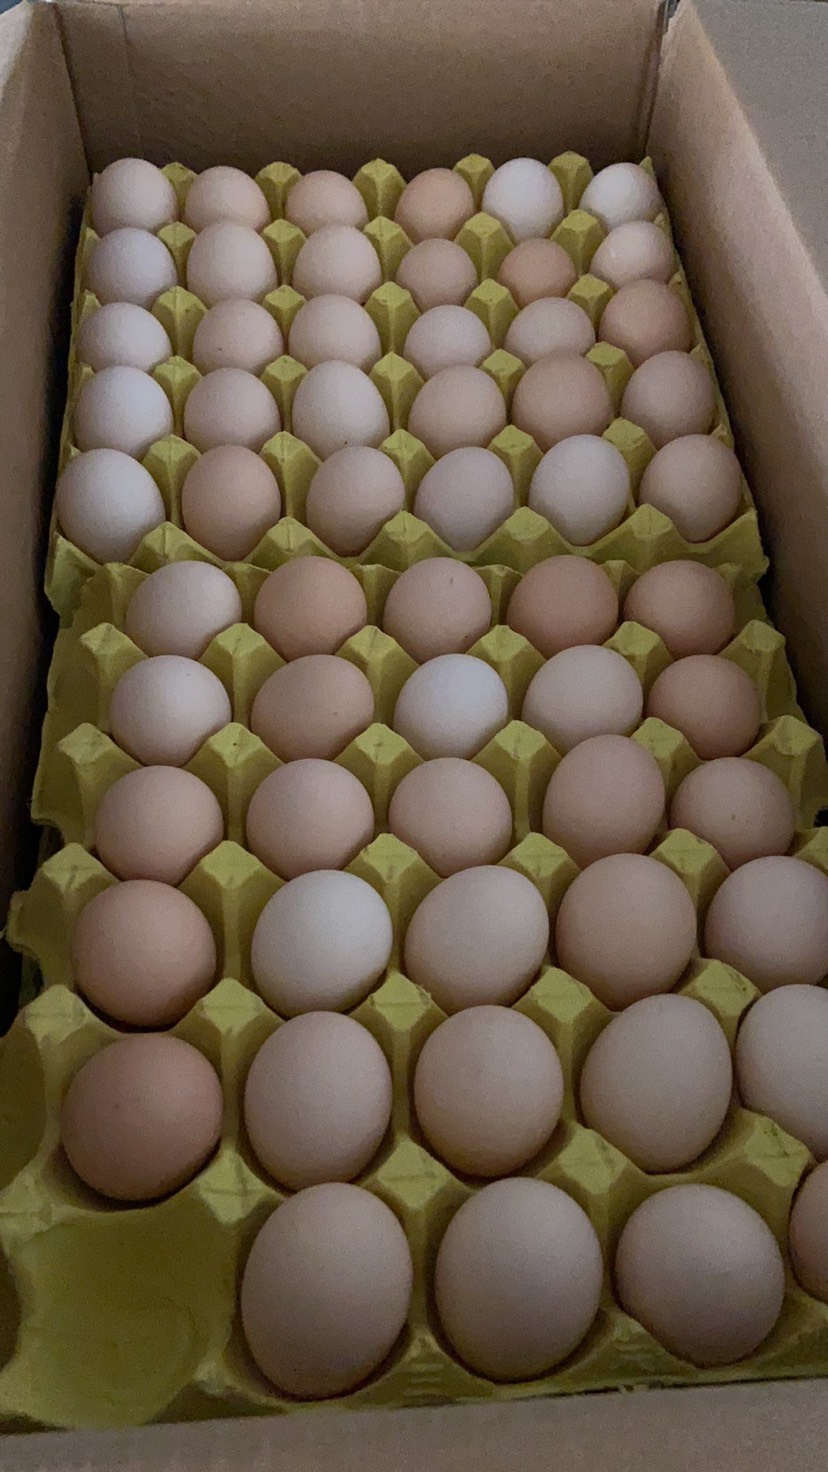 粉壳蛋 精品鲜鸡蛋土鸡蛋粉蛋无抗含硒